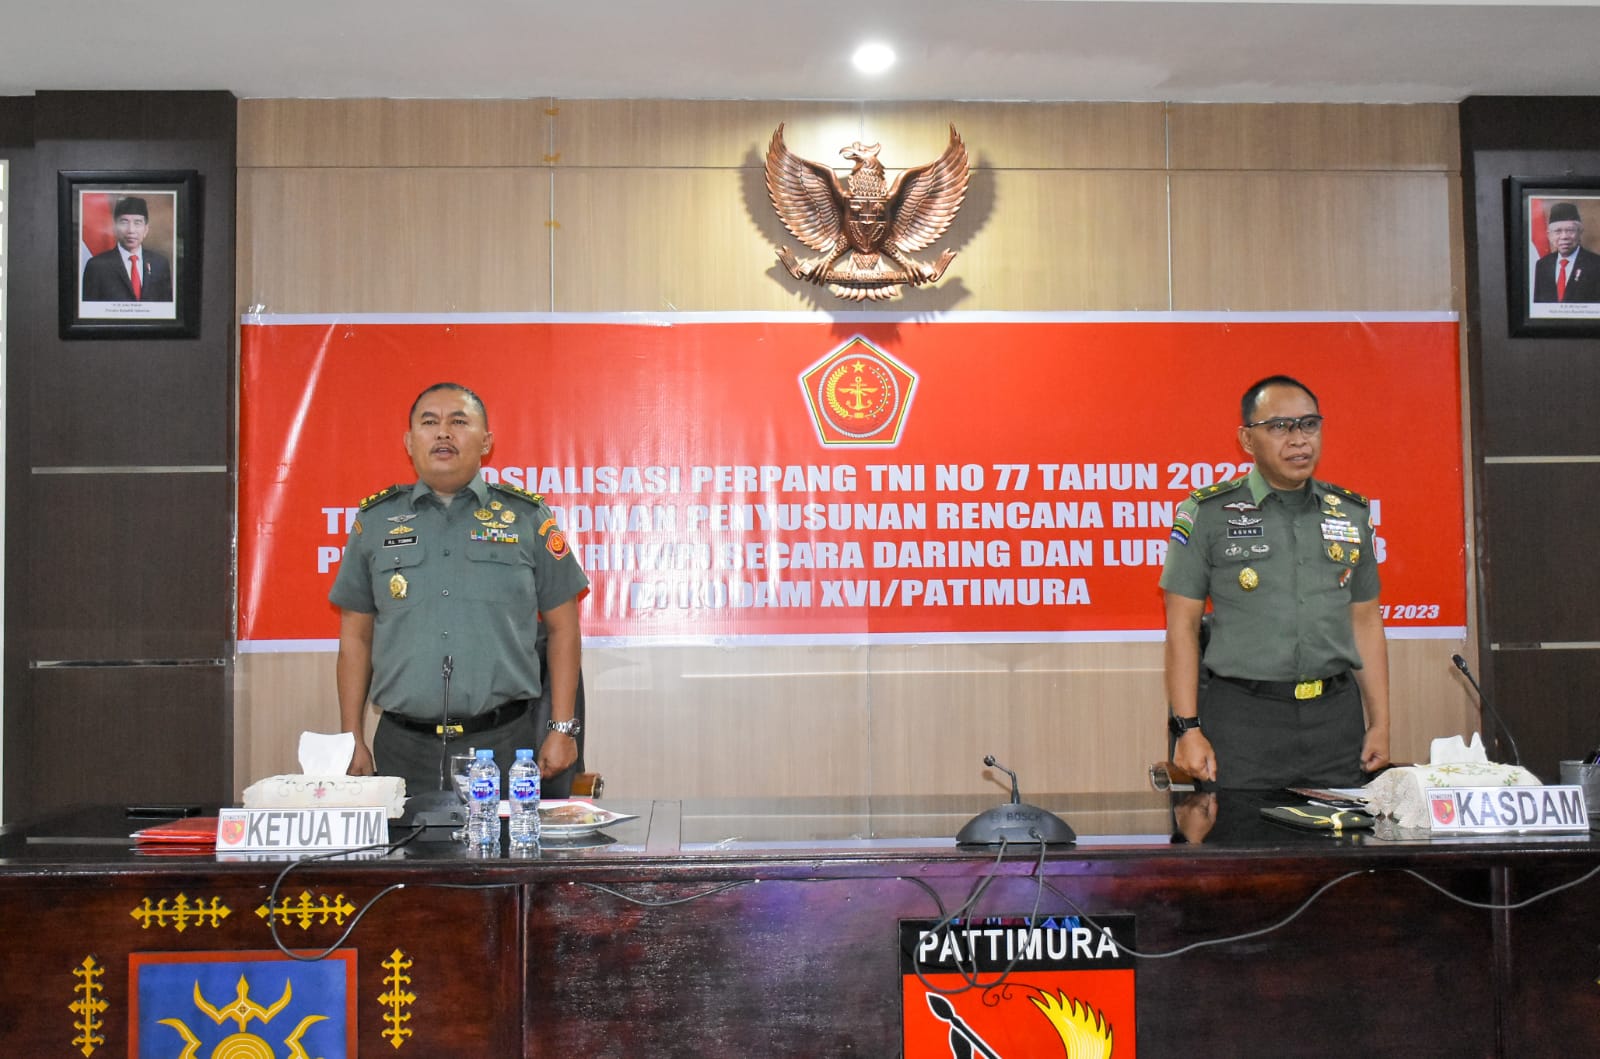 Kodam Pattimura Terima Sosialisasi Perpang TNI No 77 Tahun 2022 Dari Mabes TNI